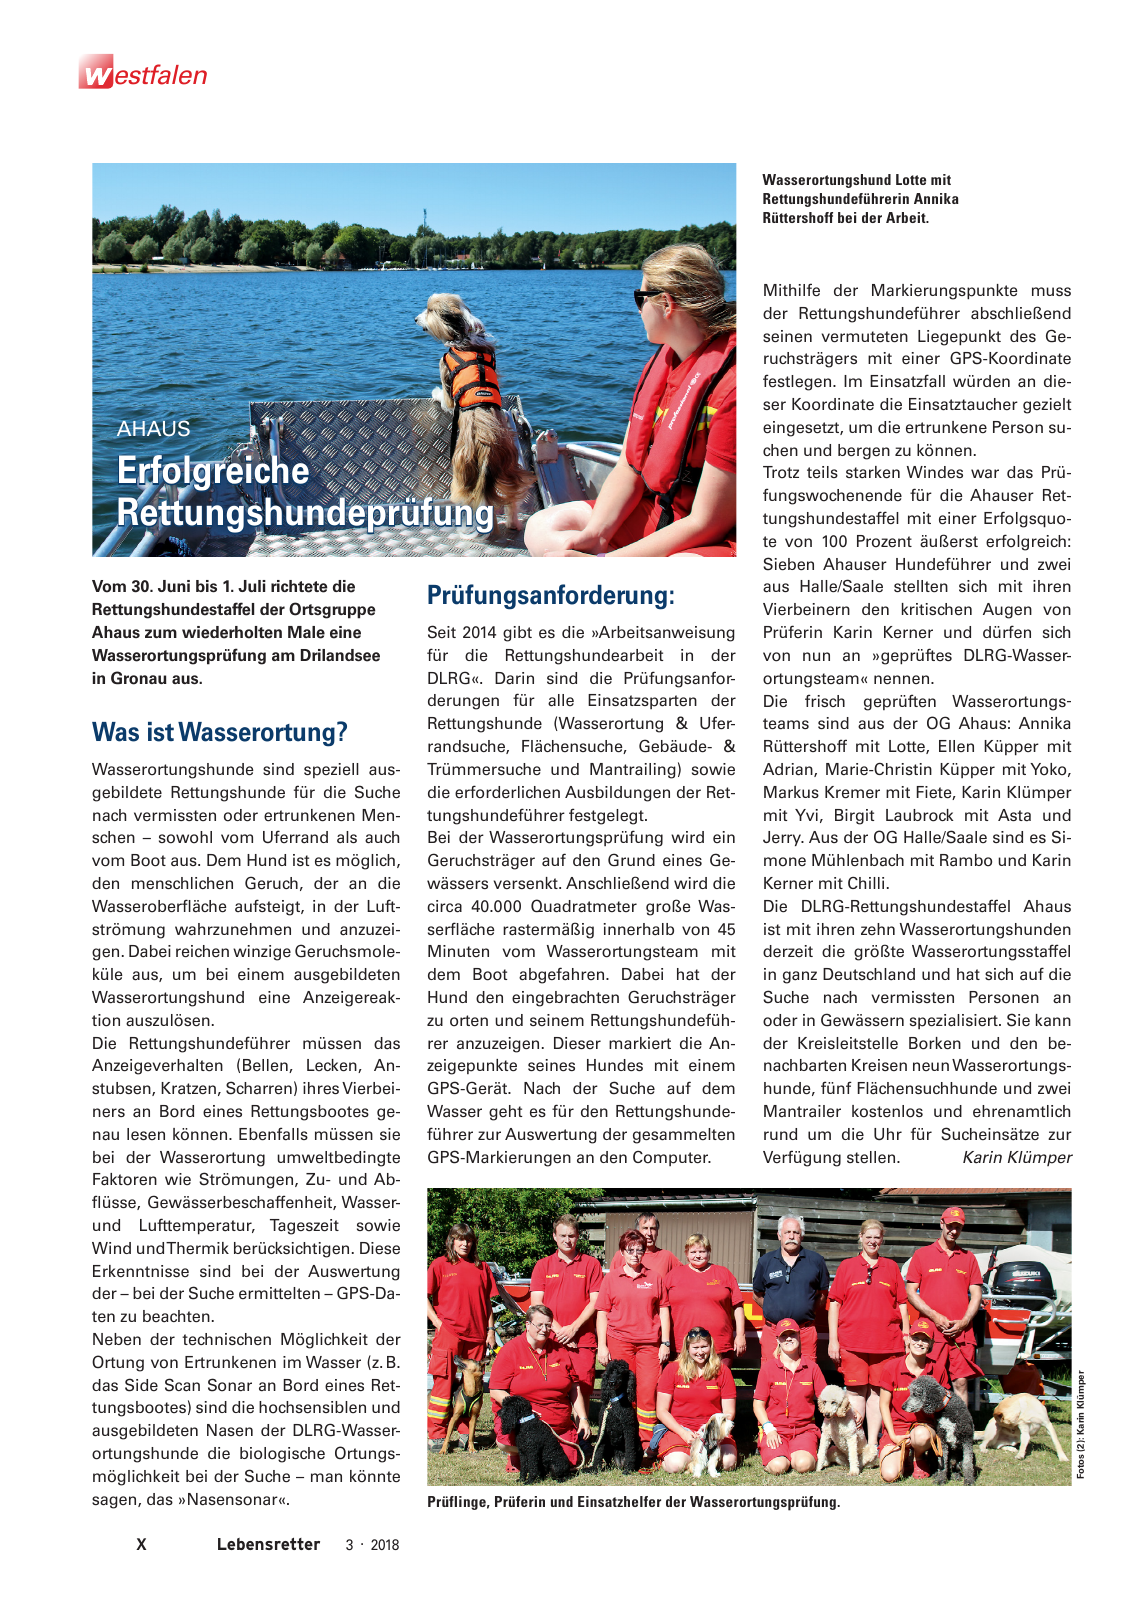 Vorschau Lebensretter 3/2018 - Regionalausgabe Westfalen Seite 12